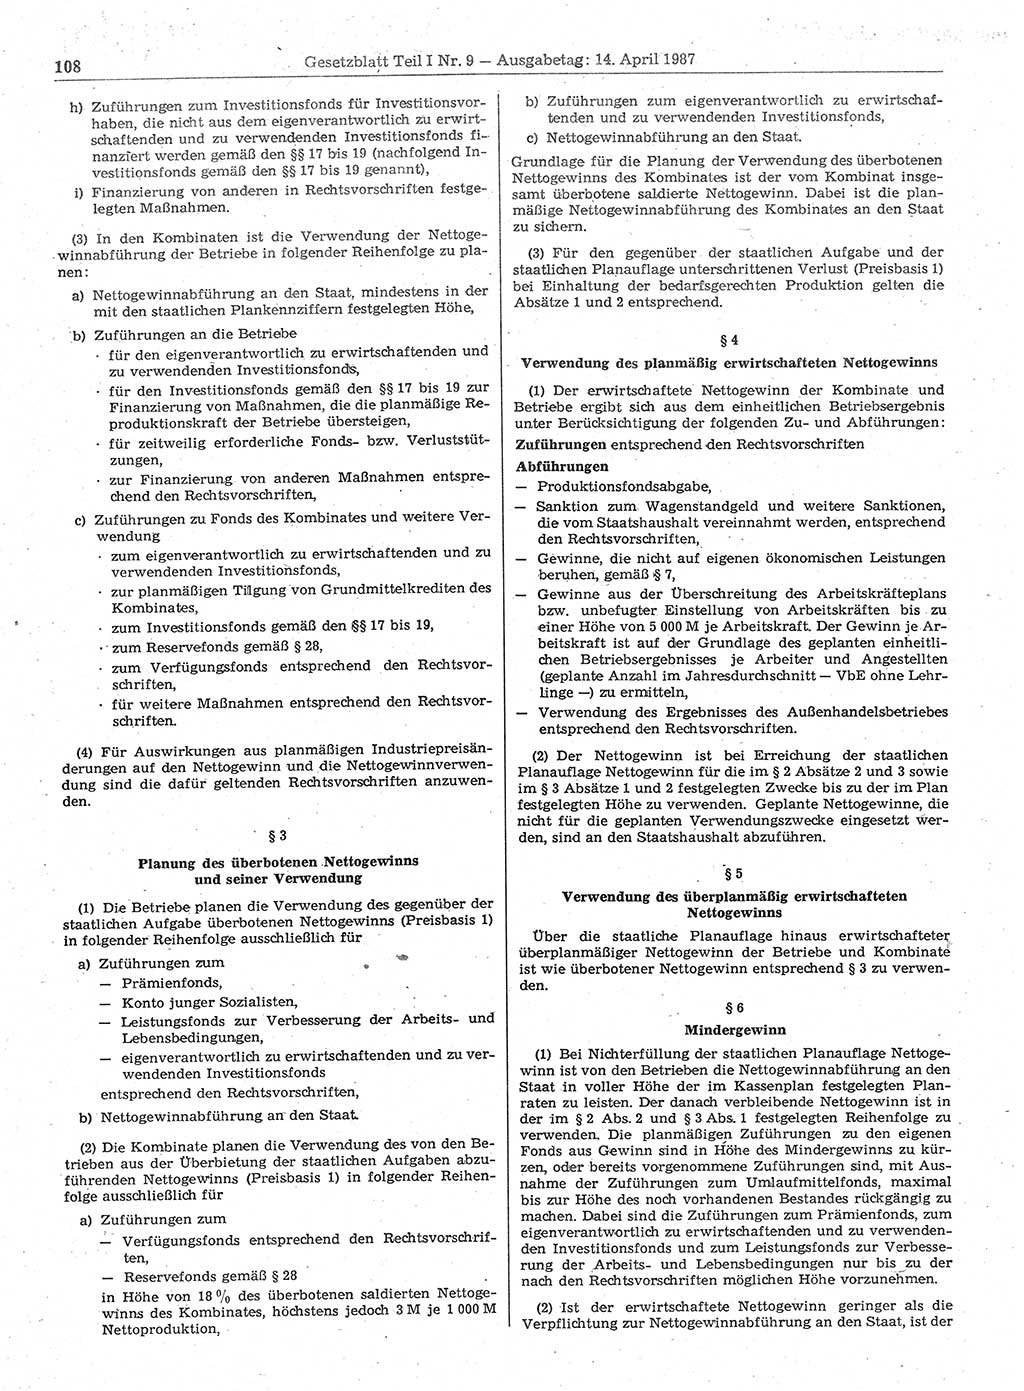 Gesetzblatt (GBl.) der Deutschen Demokratischen Republik (DDR) Teil Ⅰ 1987, Seite 108 (GBl. DDR Ⅰ 1987, S. 108)